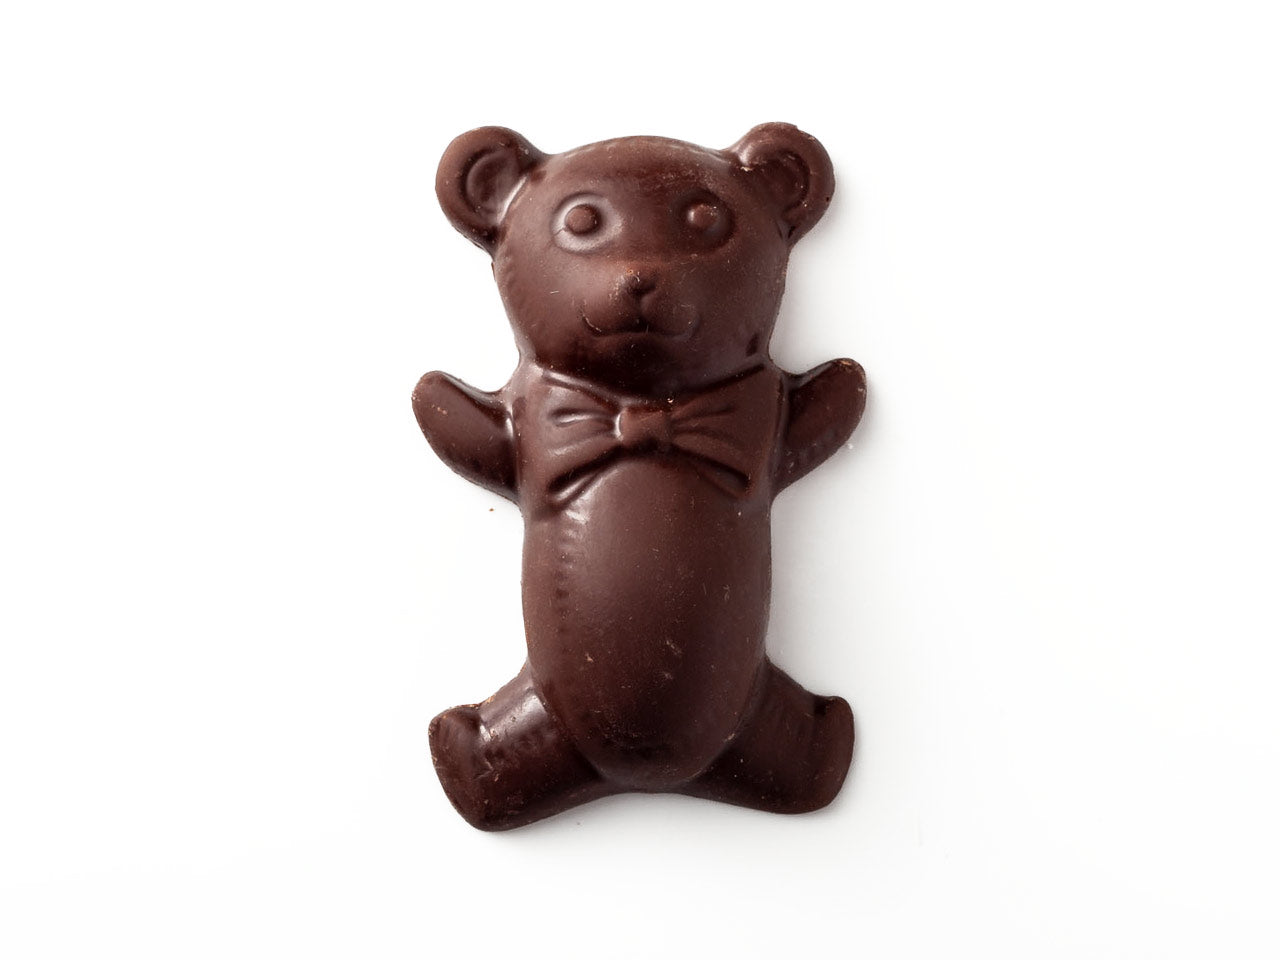 Teddy Bear Chocolate